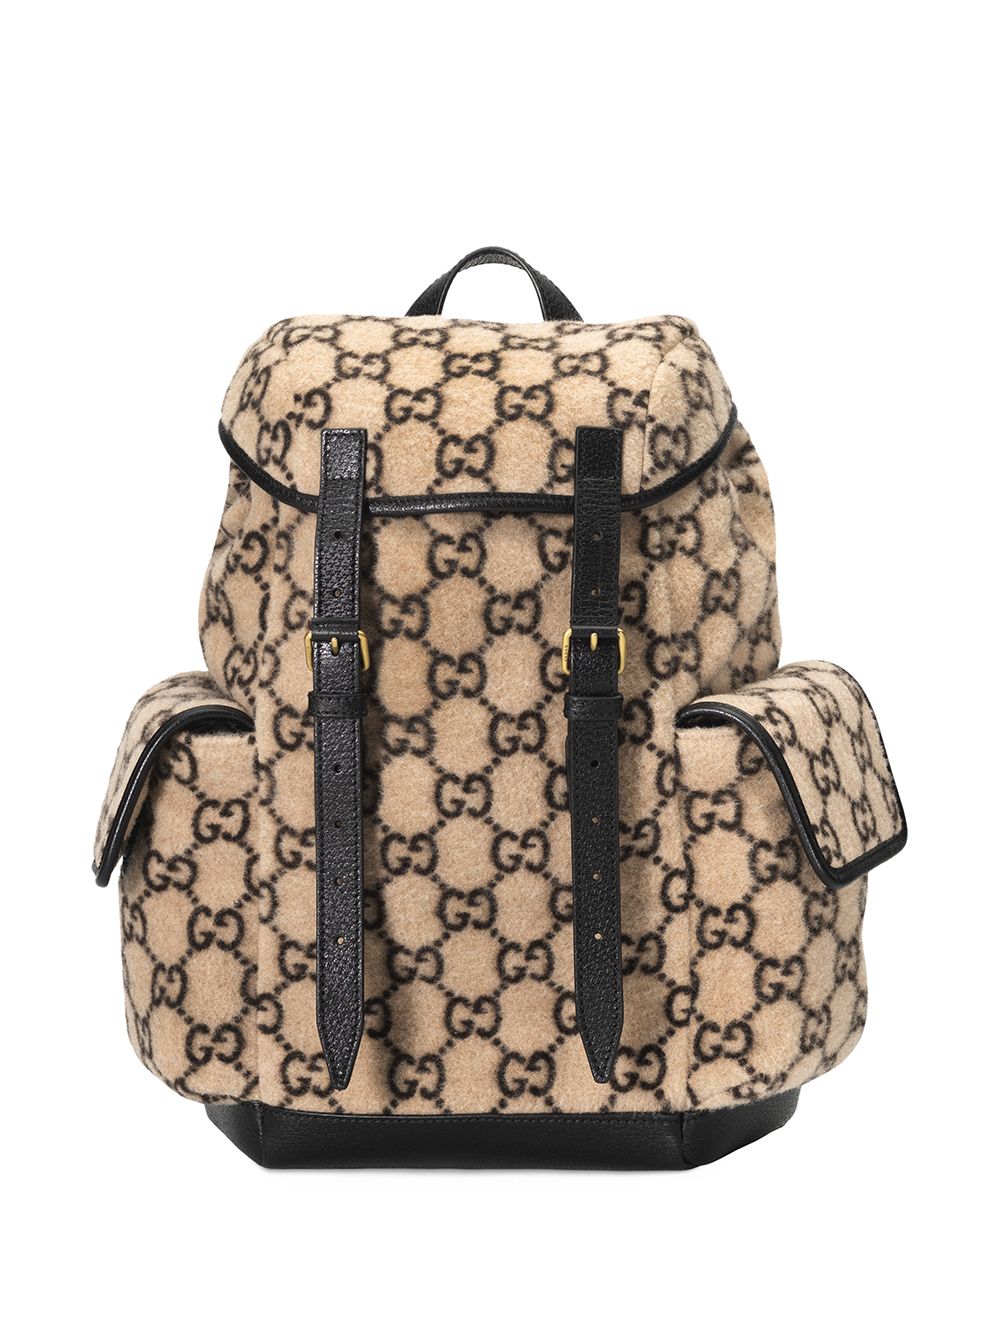 фото Gucci рюкзак с монограммой